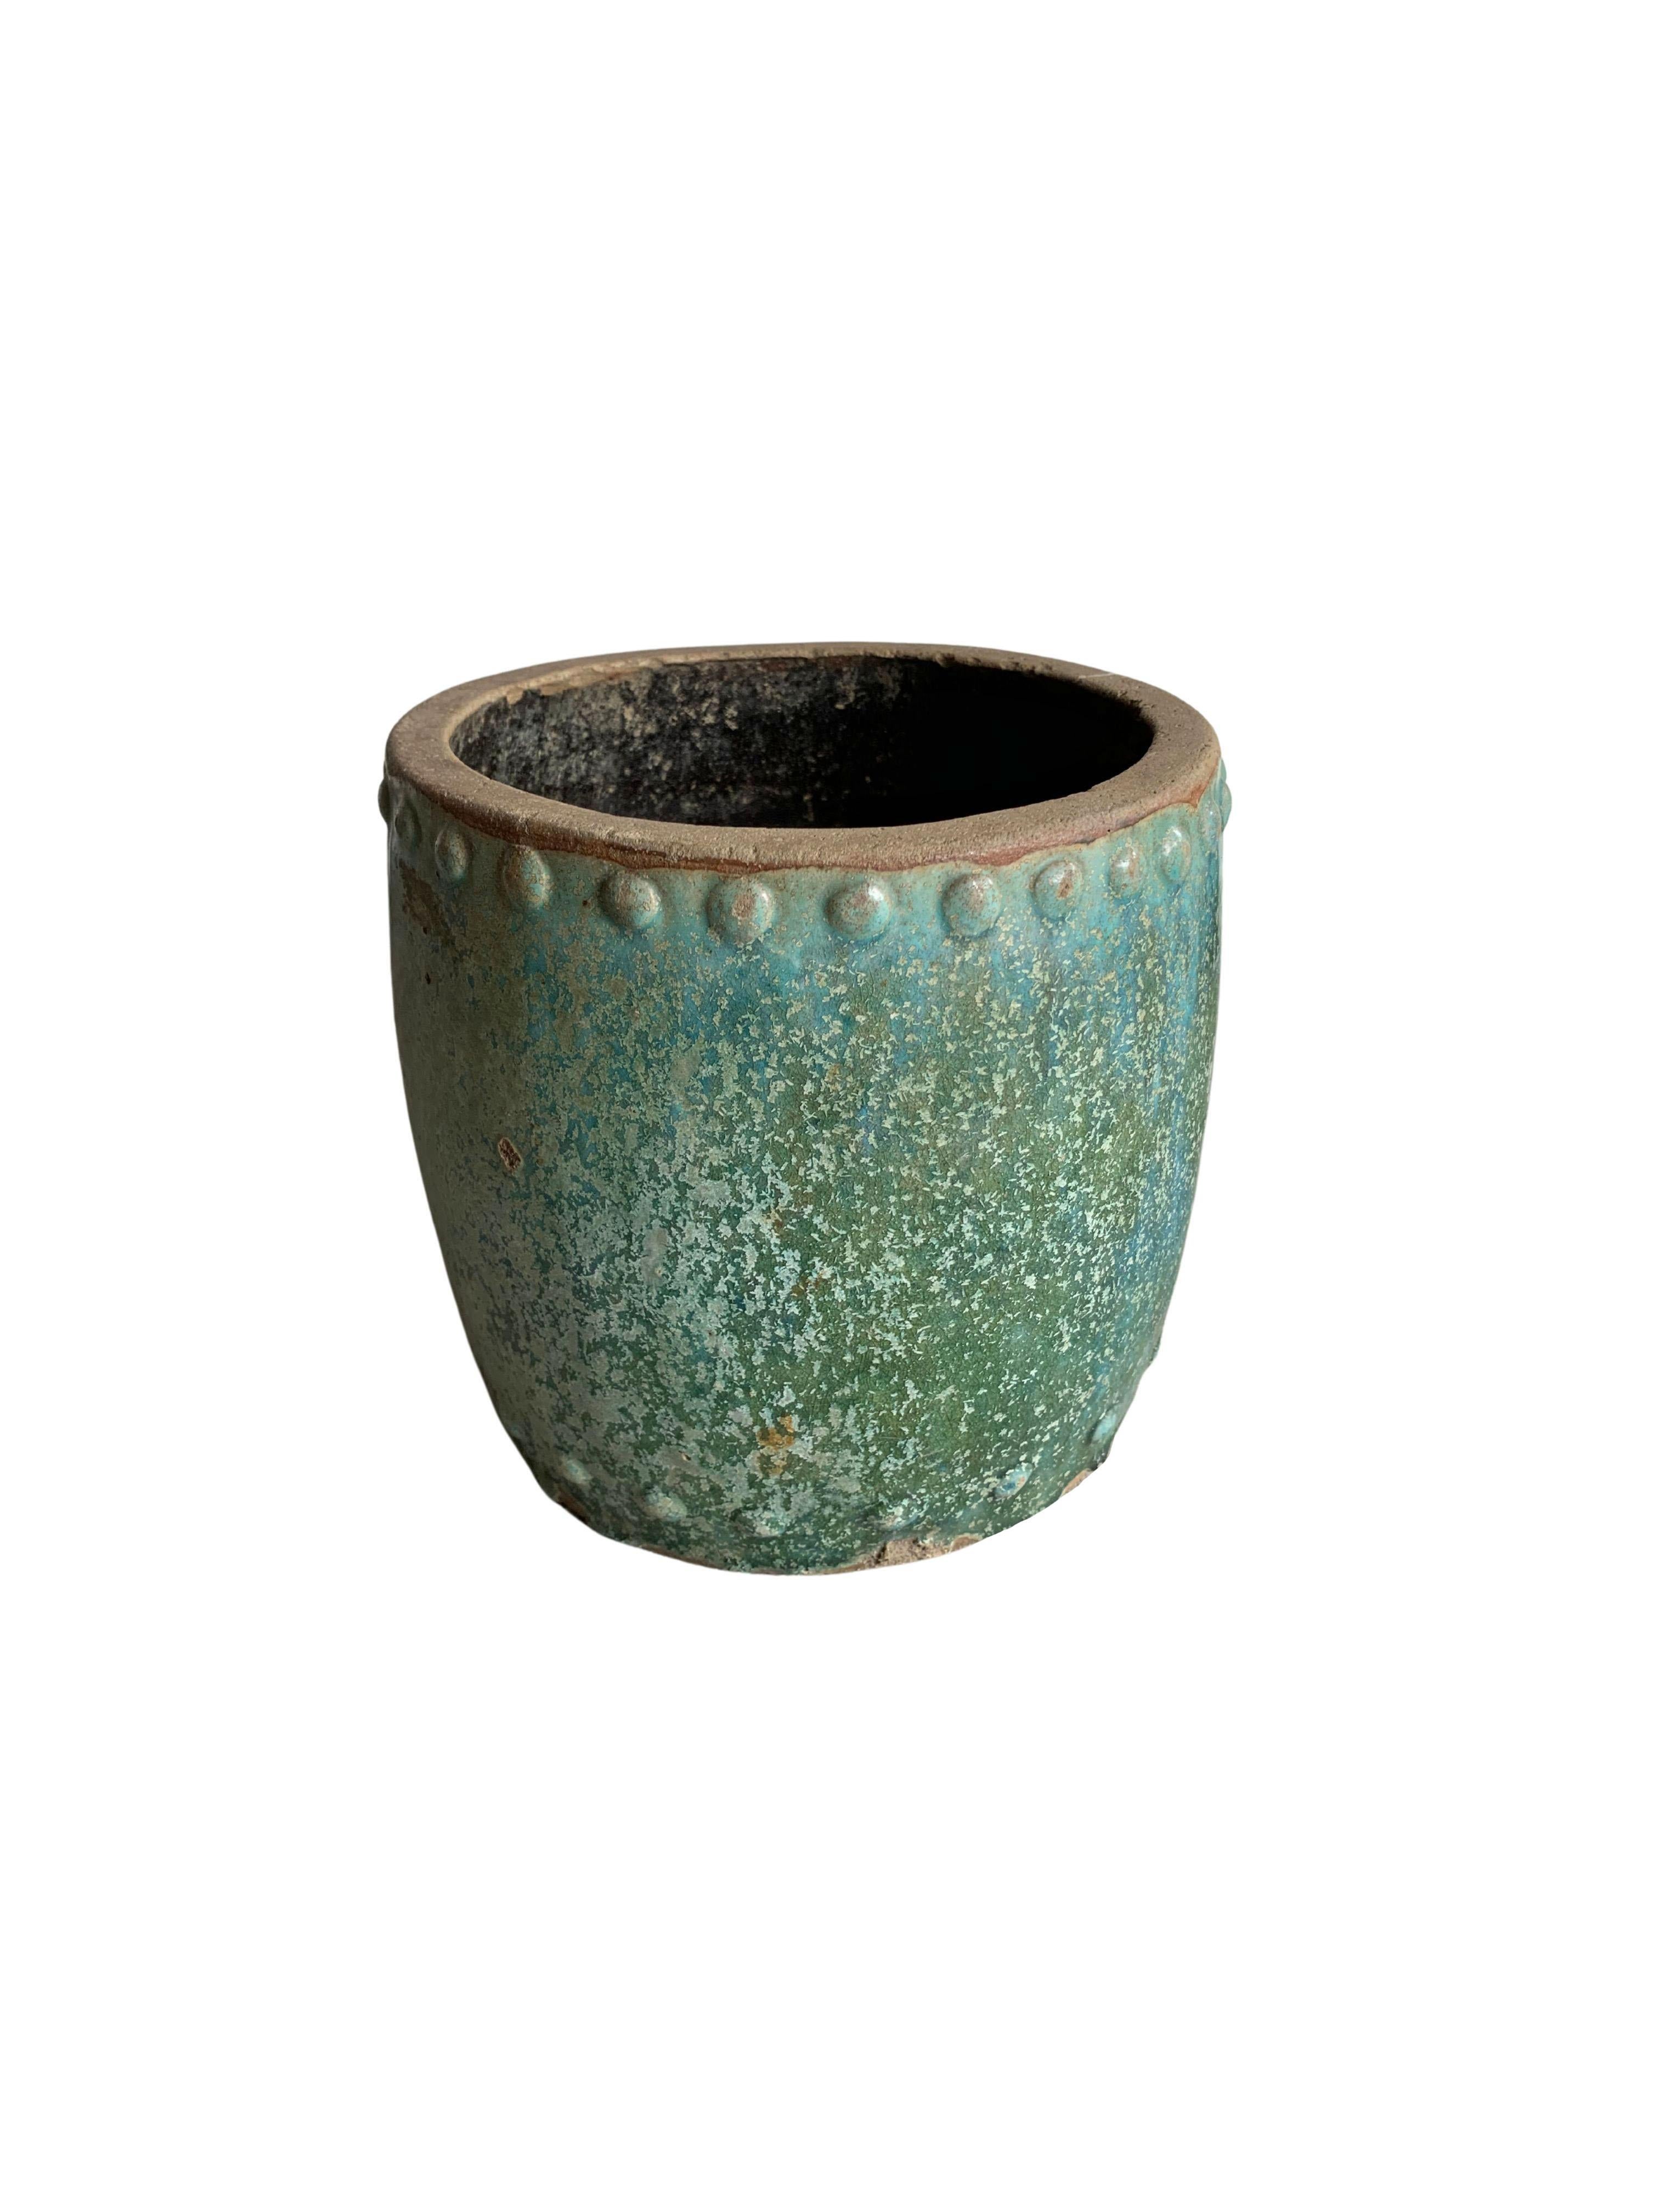 Chinois Pot de rangement / jardinière en céramique vernissée verte « huile blanche » de Chine, vers 1900 en vente